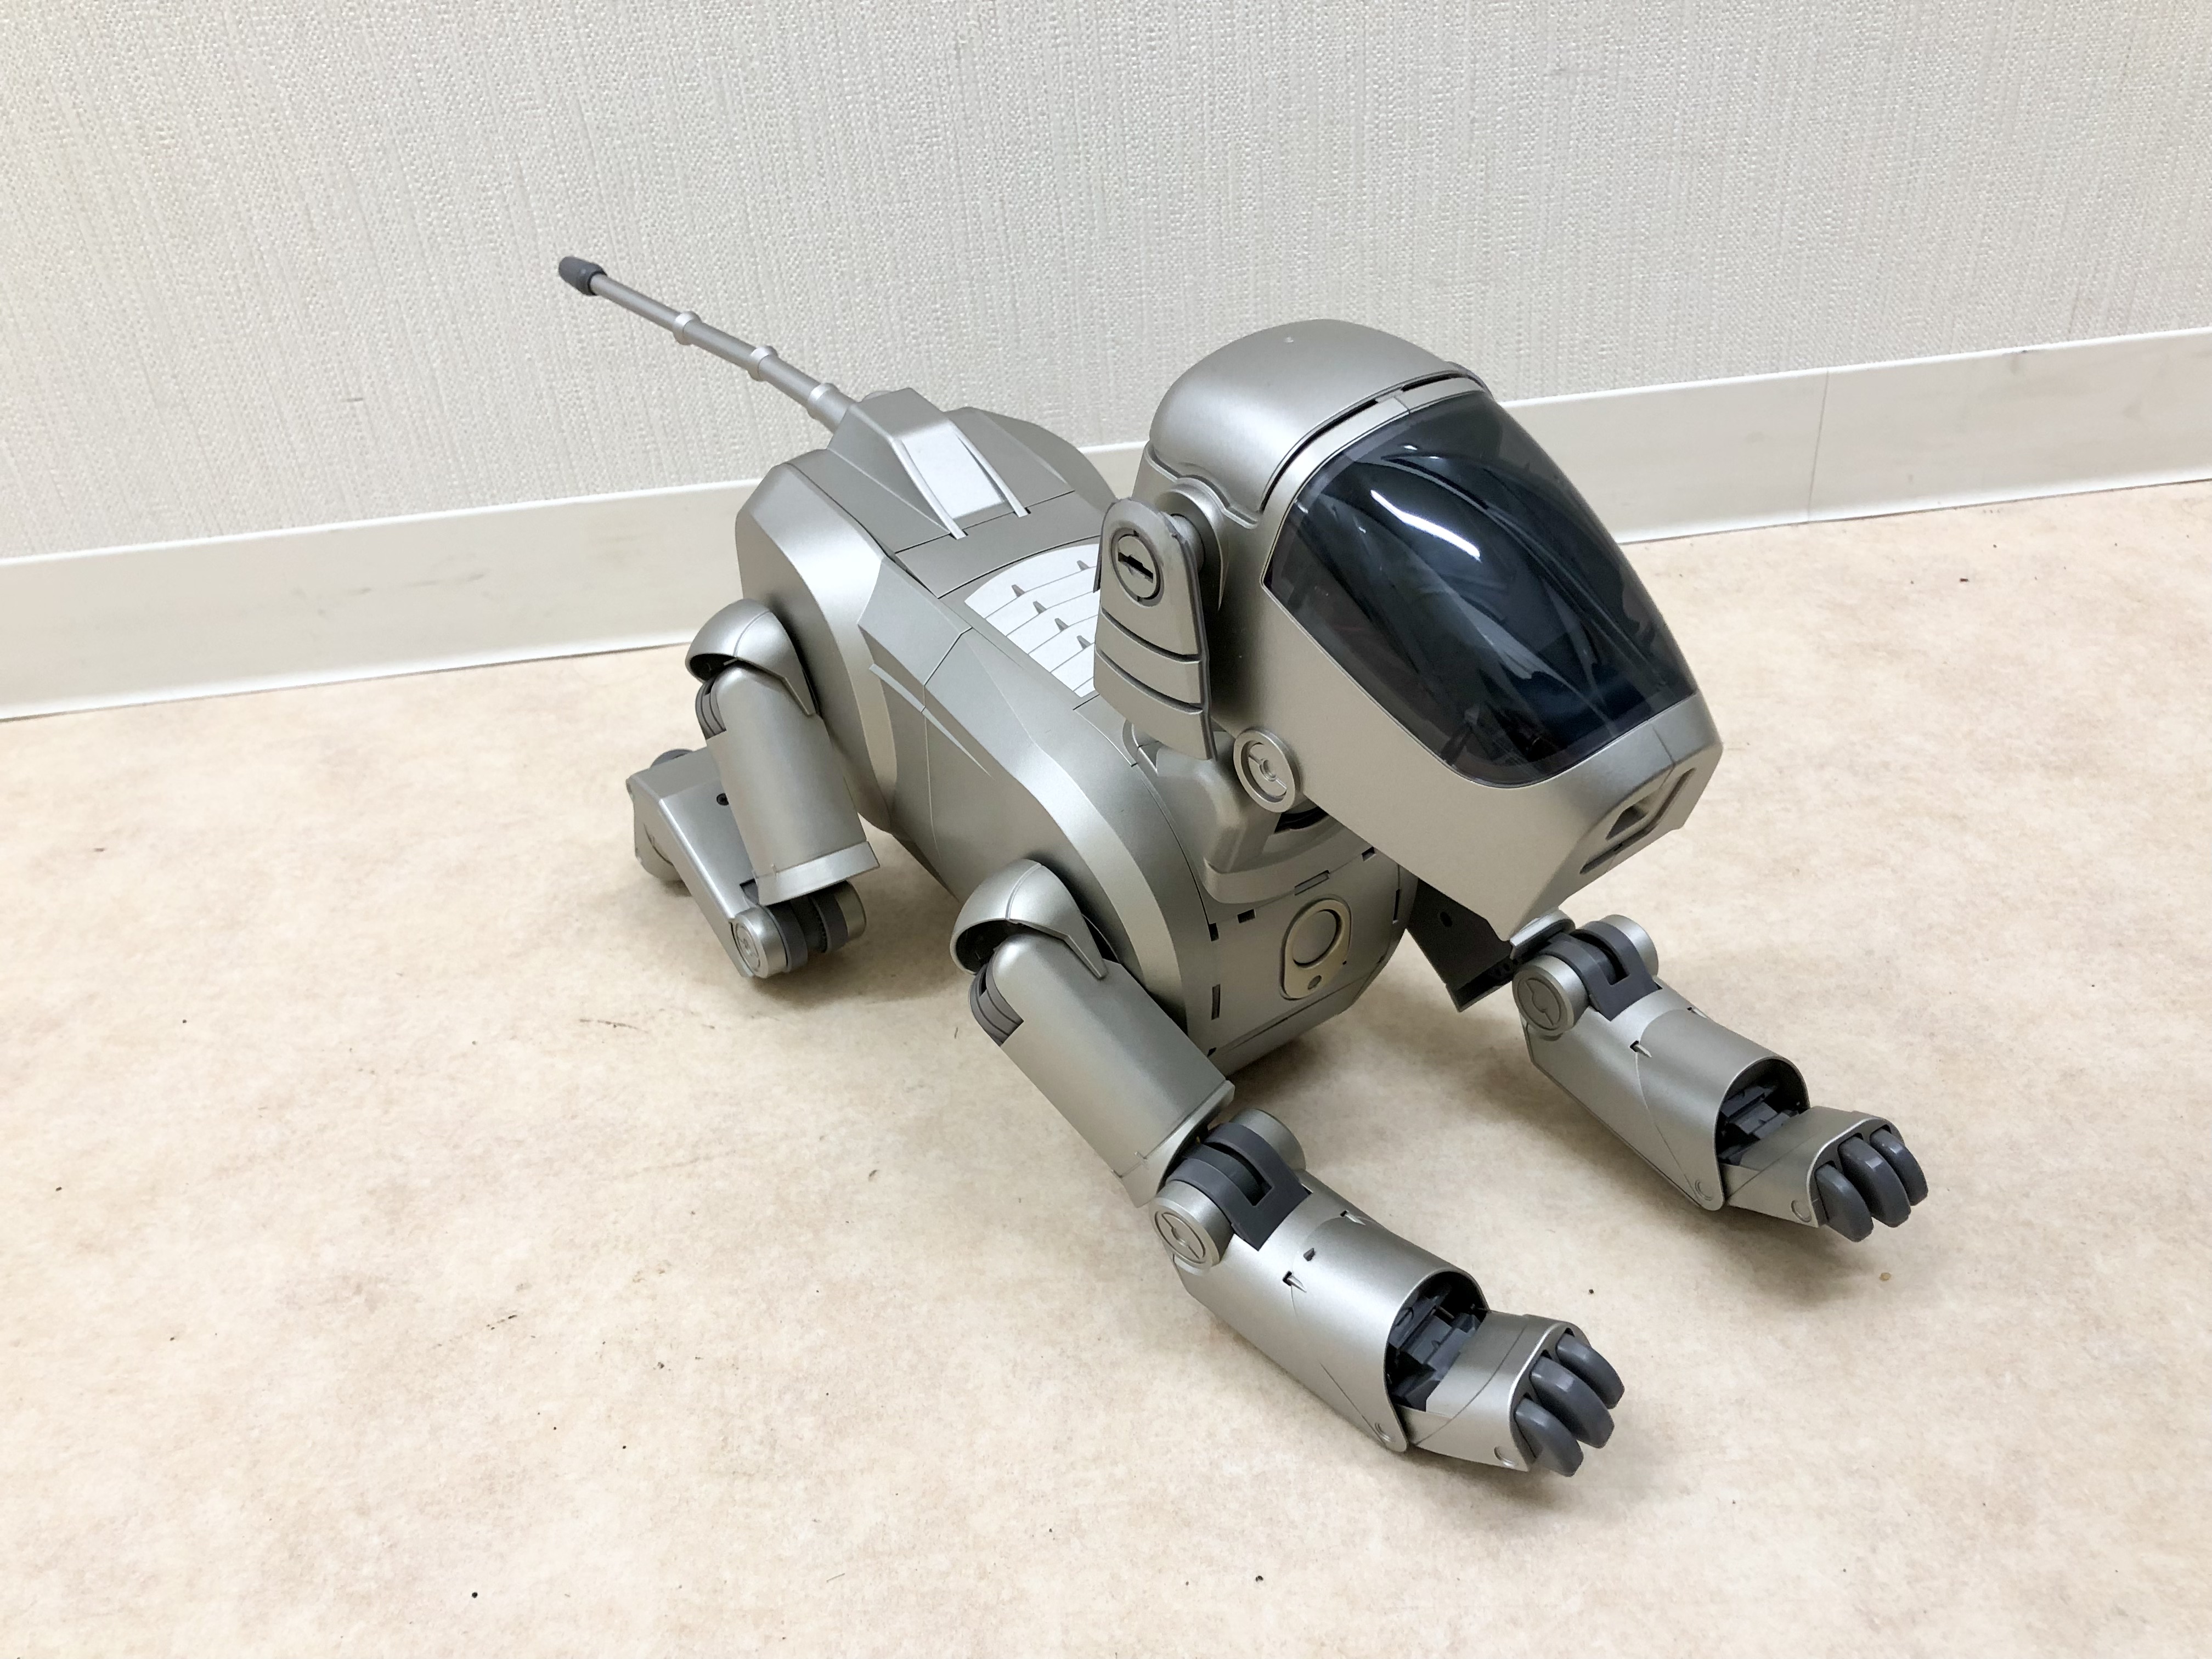 Sony AIBO 初代 アイボ ERS-110 ペット型ロボット 未使用品 お買取り 